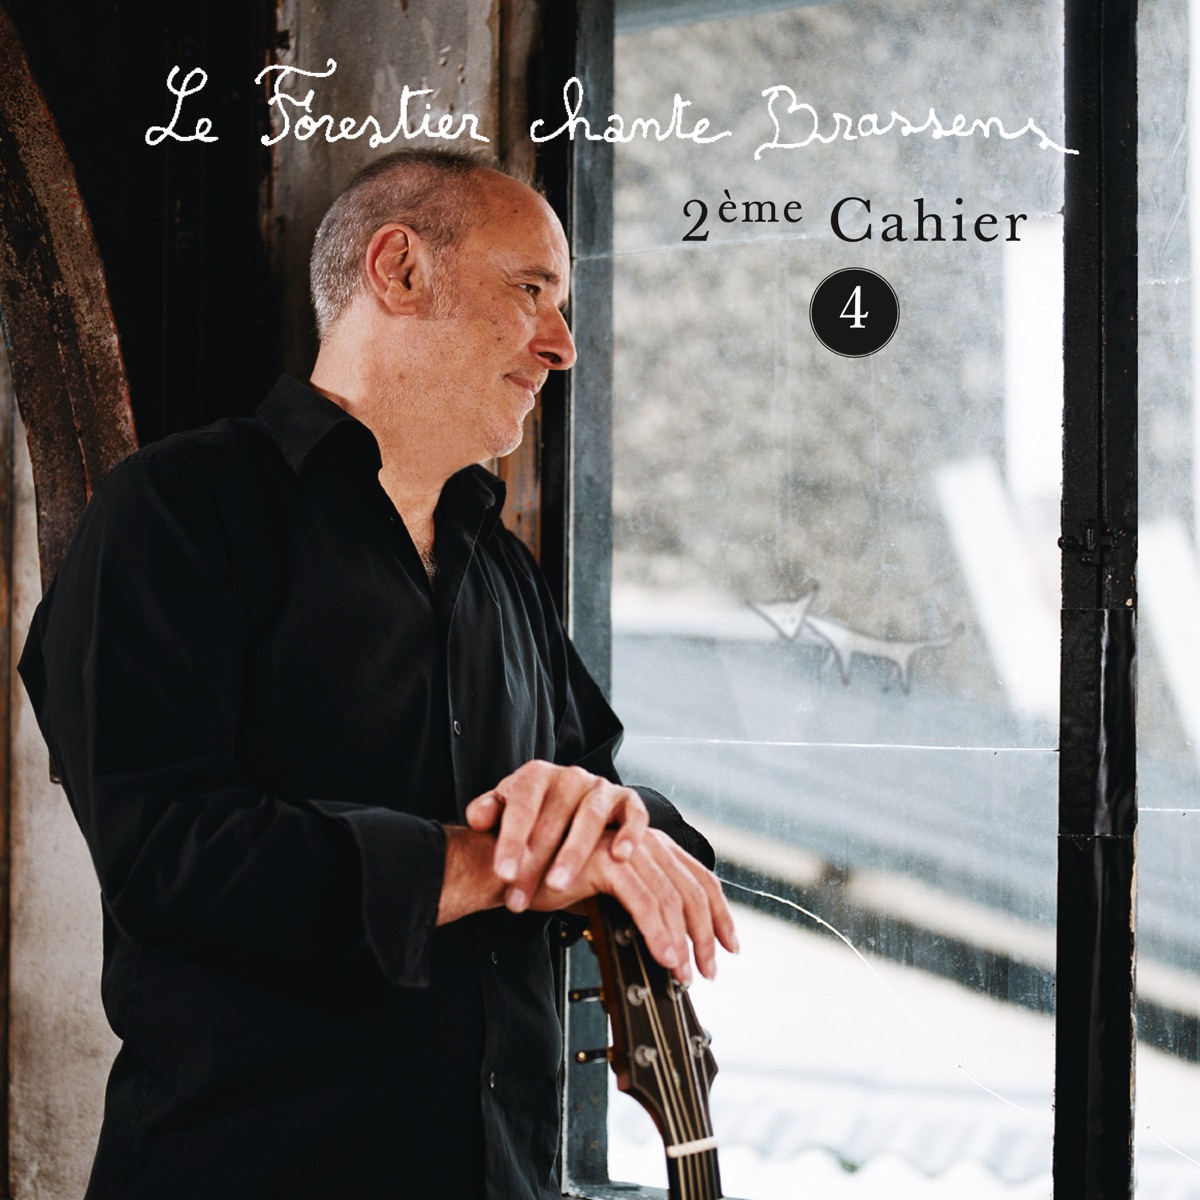 Le Forestier chante Brassens Cahier 2 - Vol 4 par Maxime Le Forestier sur  Apple Music